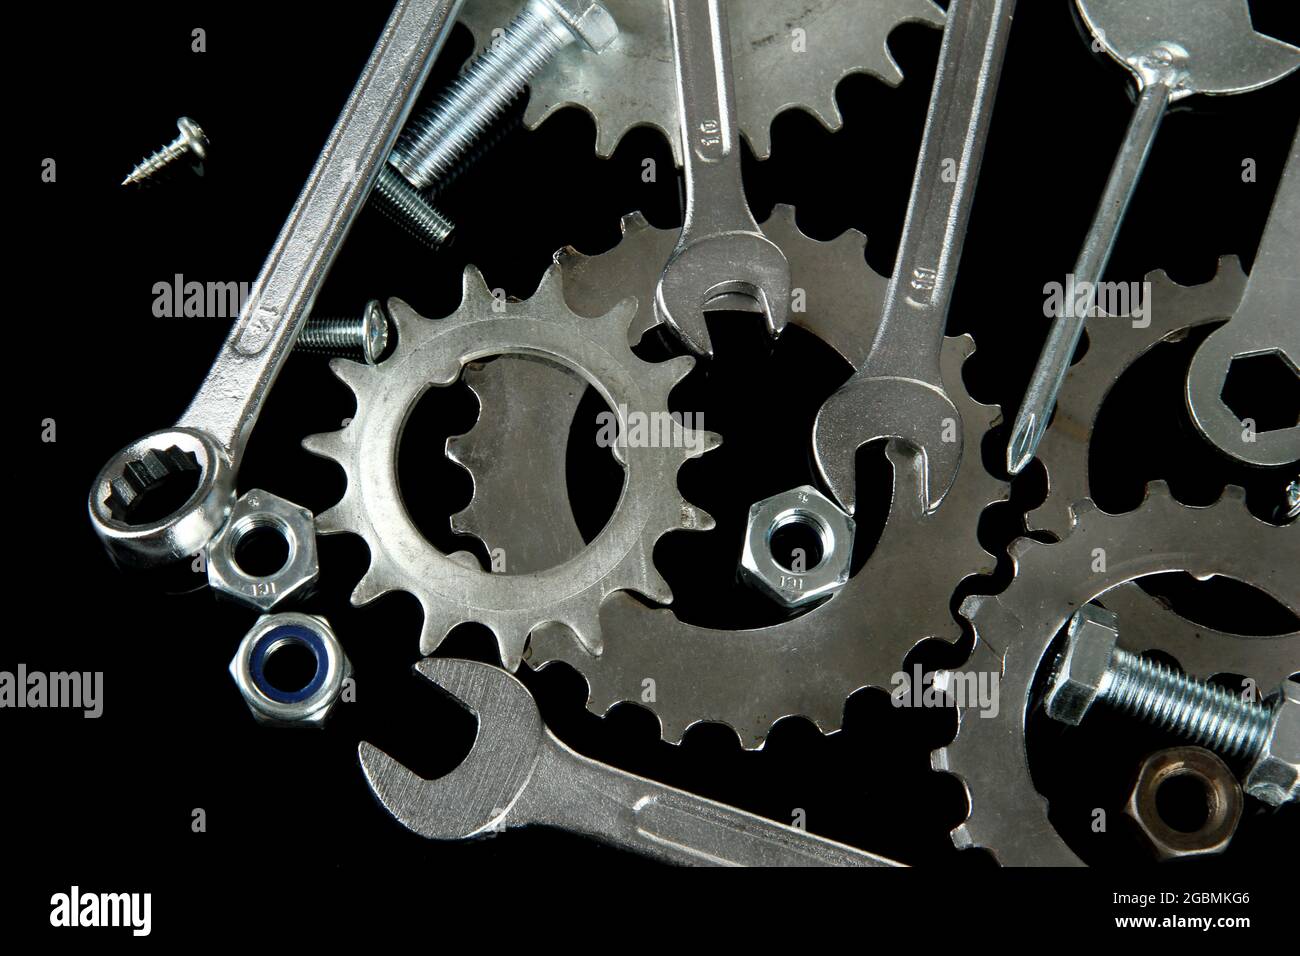 Maschinengetriebe, Metallzahnräder, Muttern und Schrauben auf schwarz  isoliert Stockfotografie - Alamy